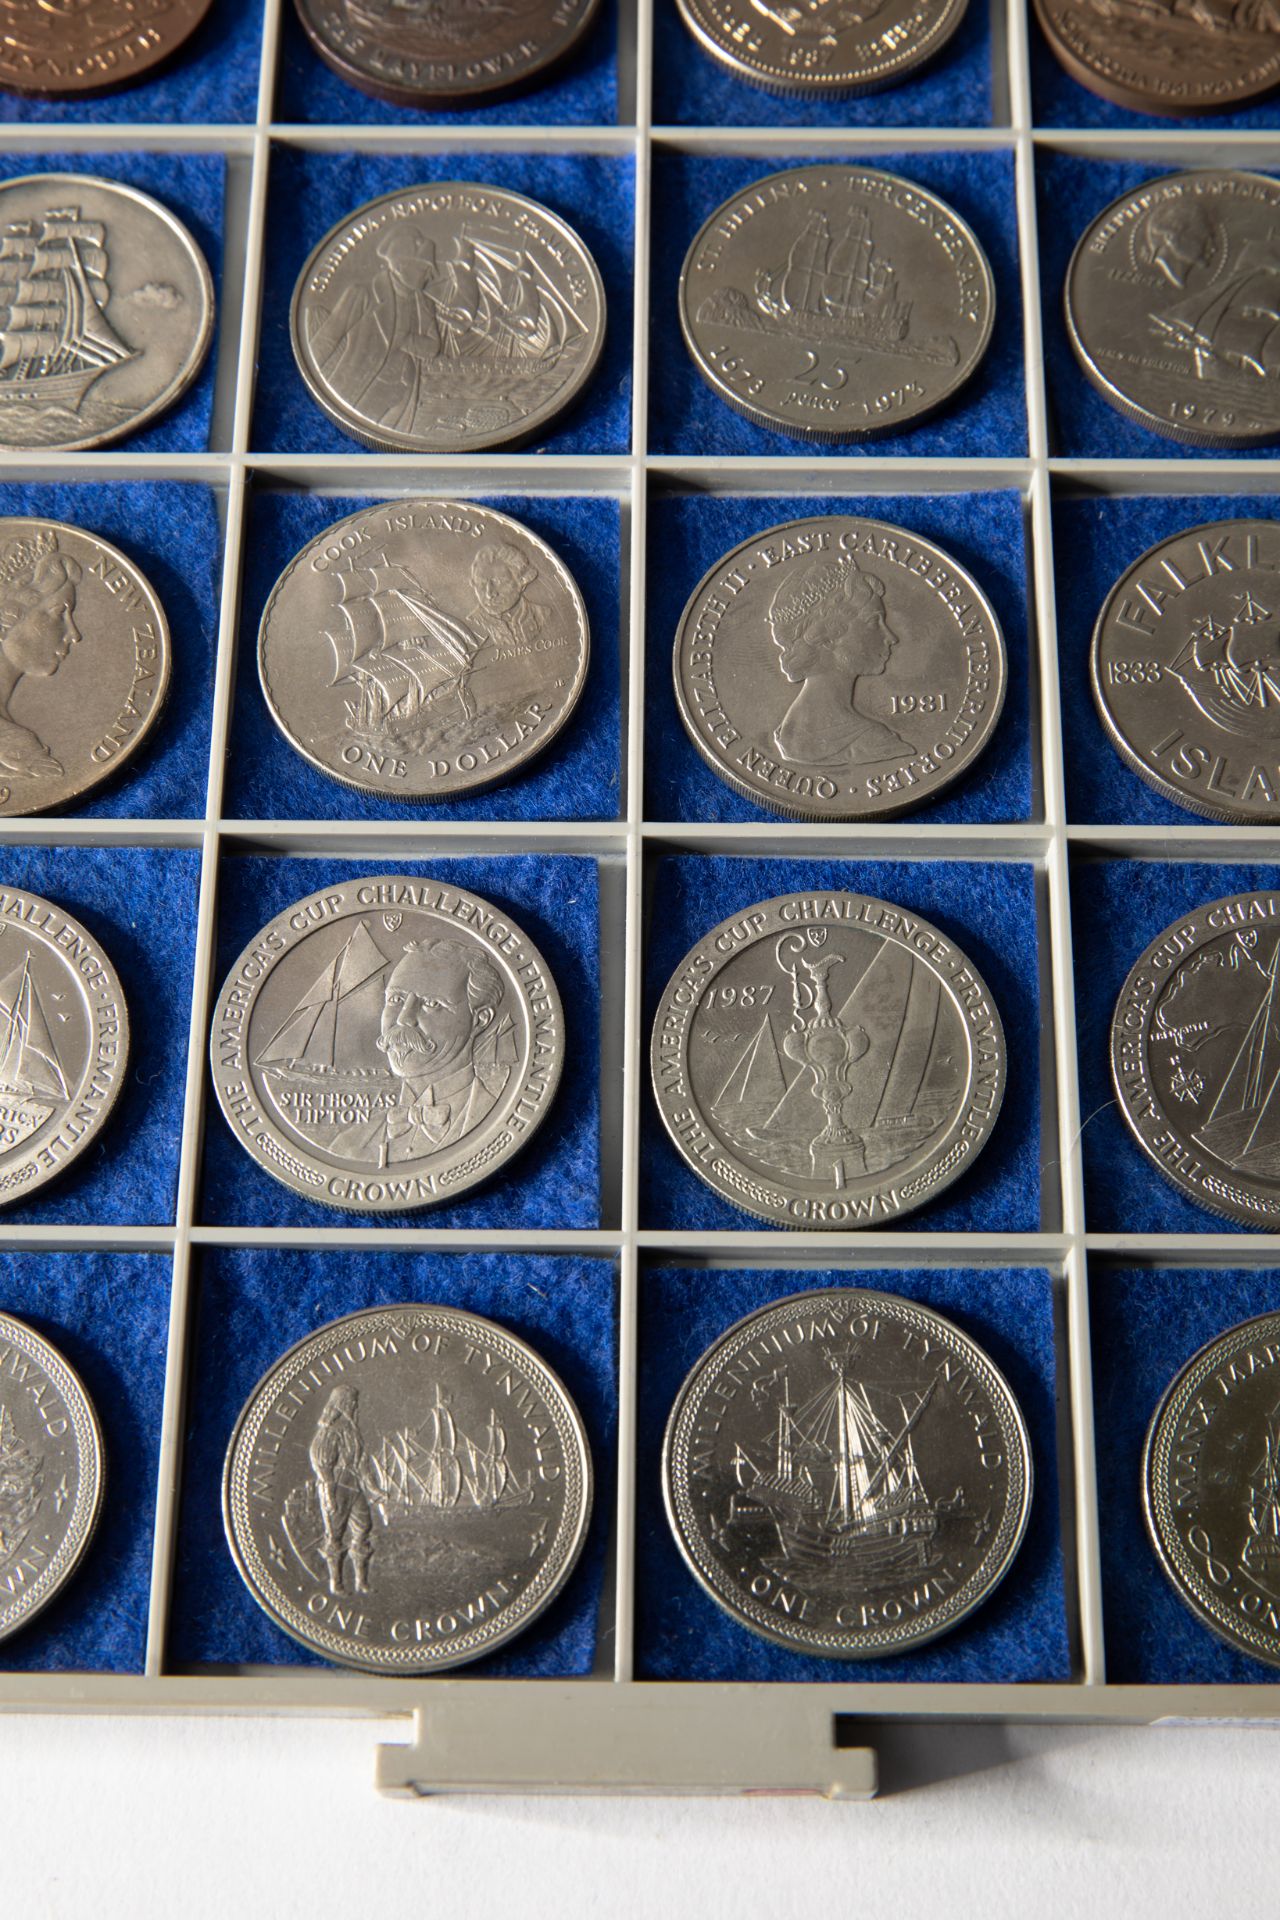 26 silver coins & 8 medals, ships 1969-1988 worldwide - Bild 3 aus 13